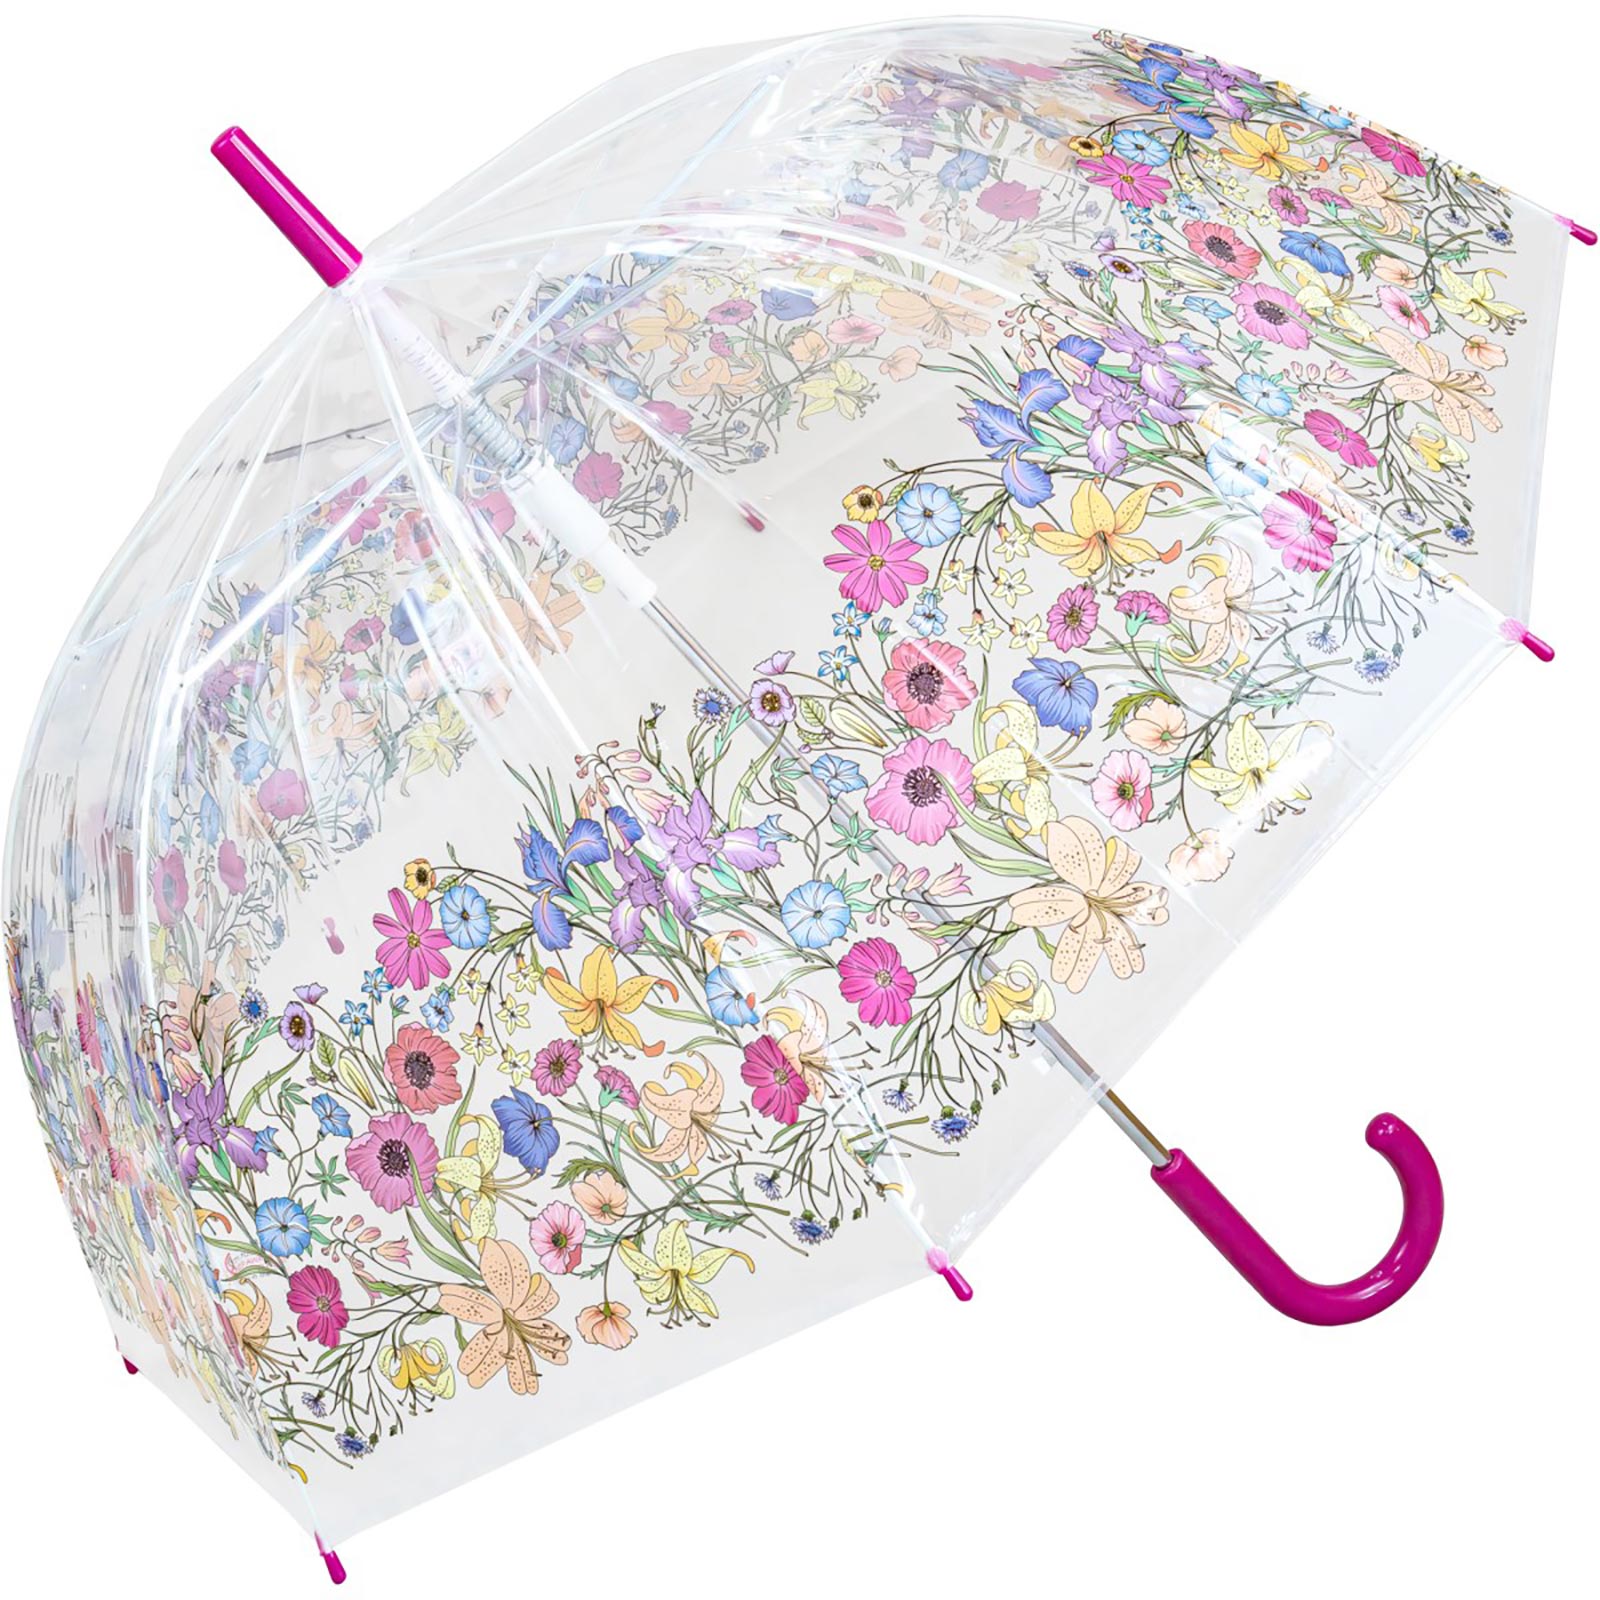 Multicolour Floral Border Dome Umbrella